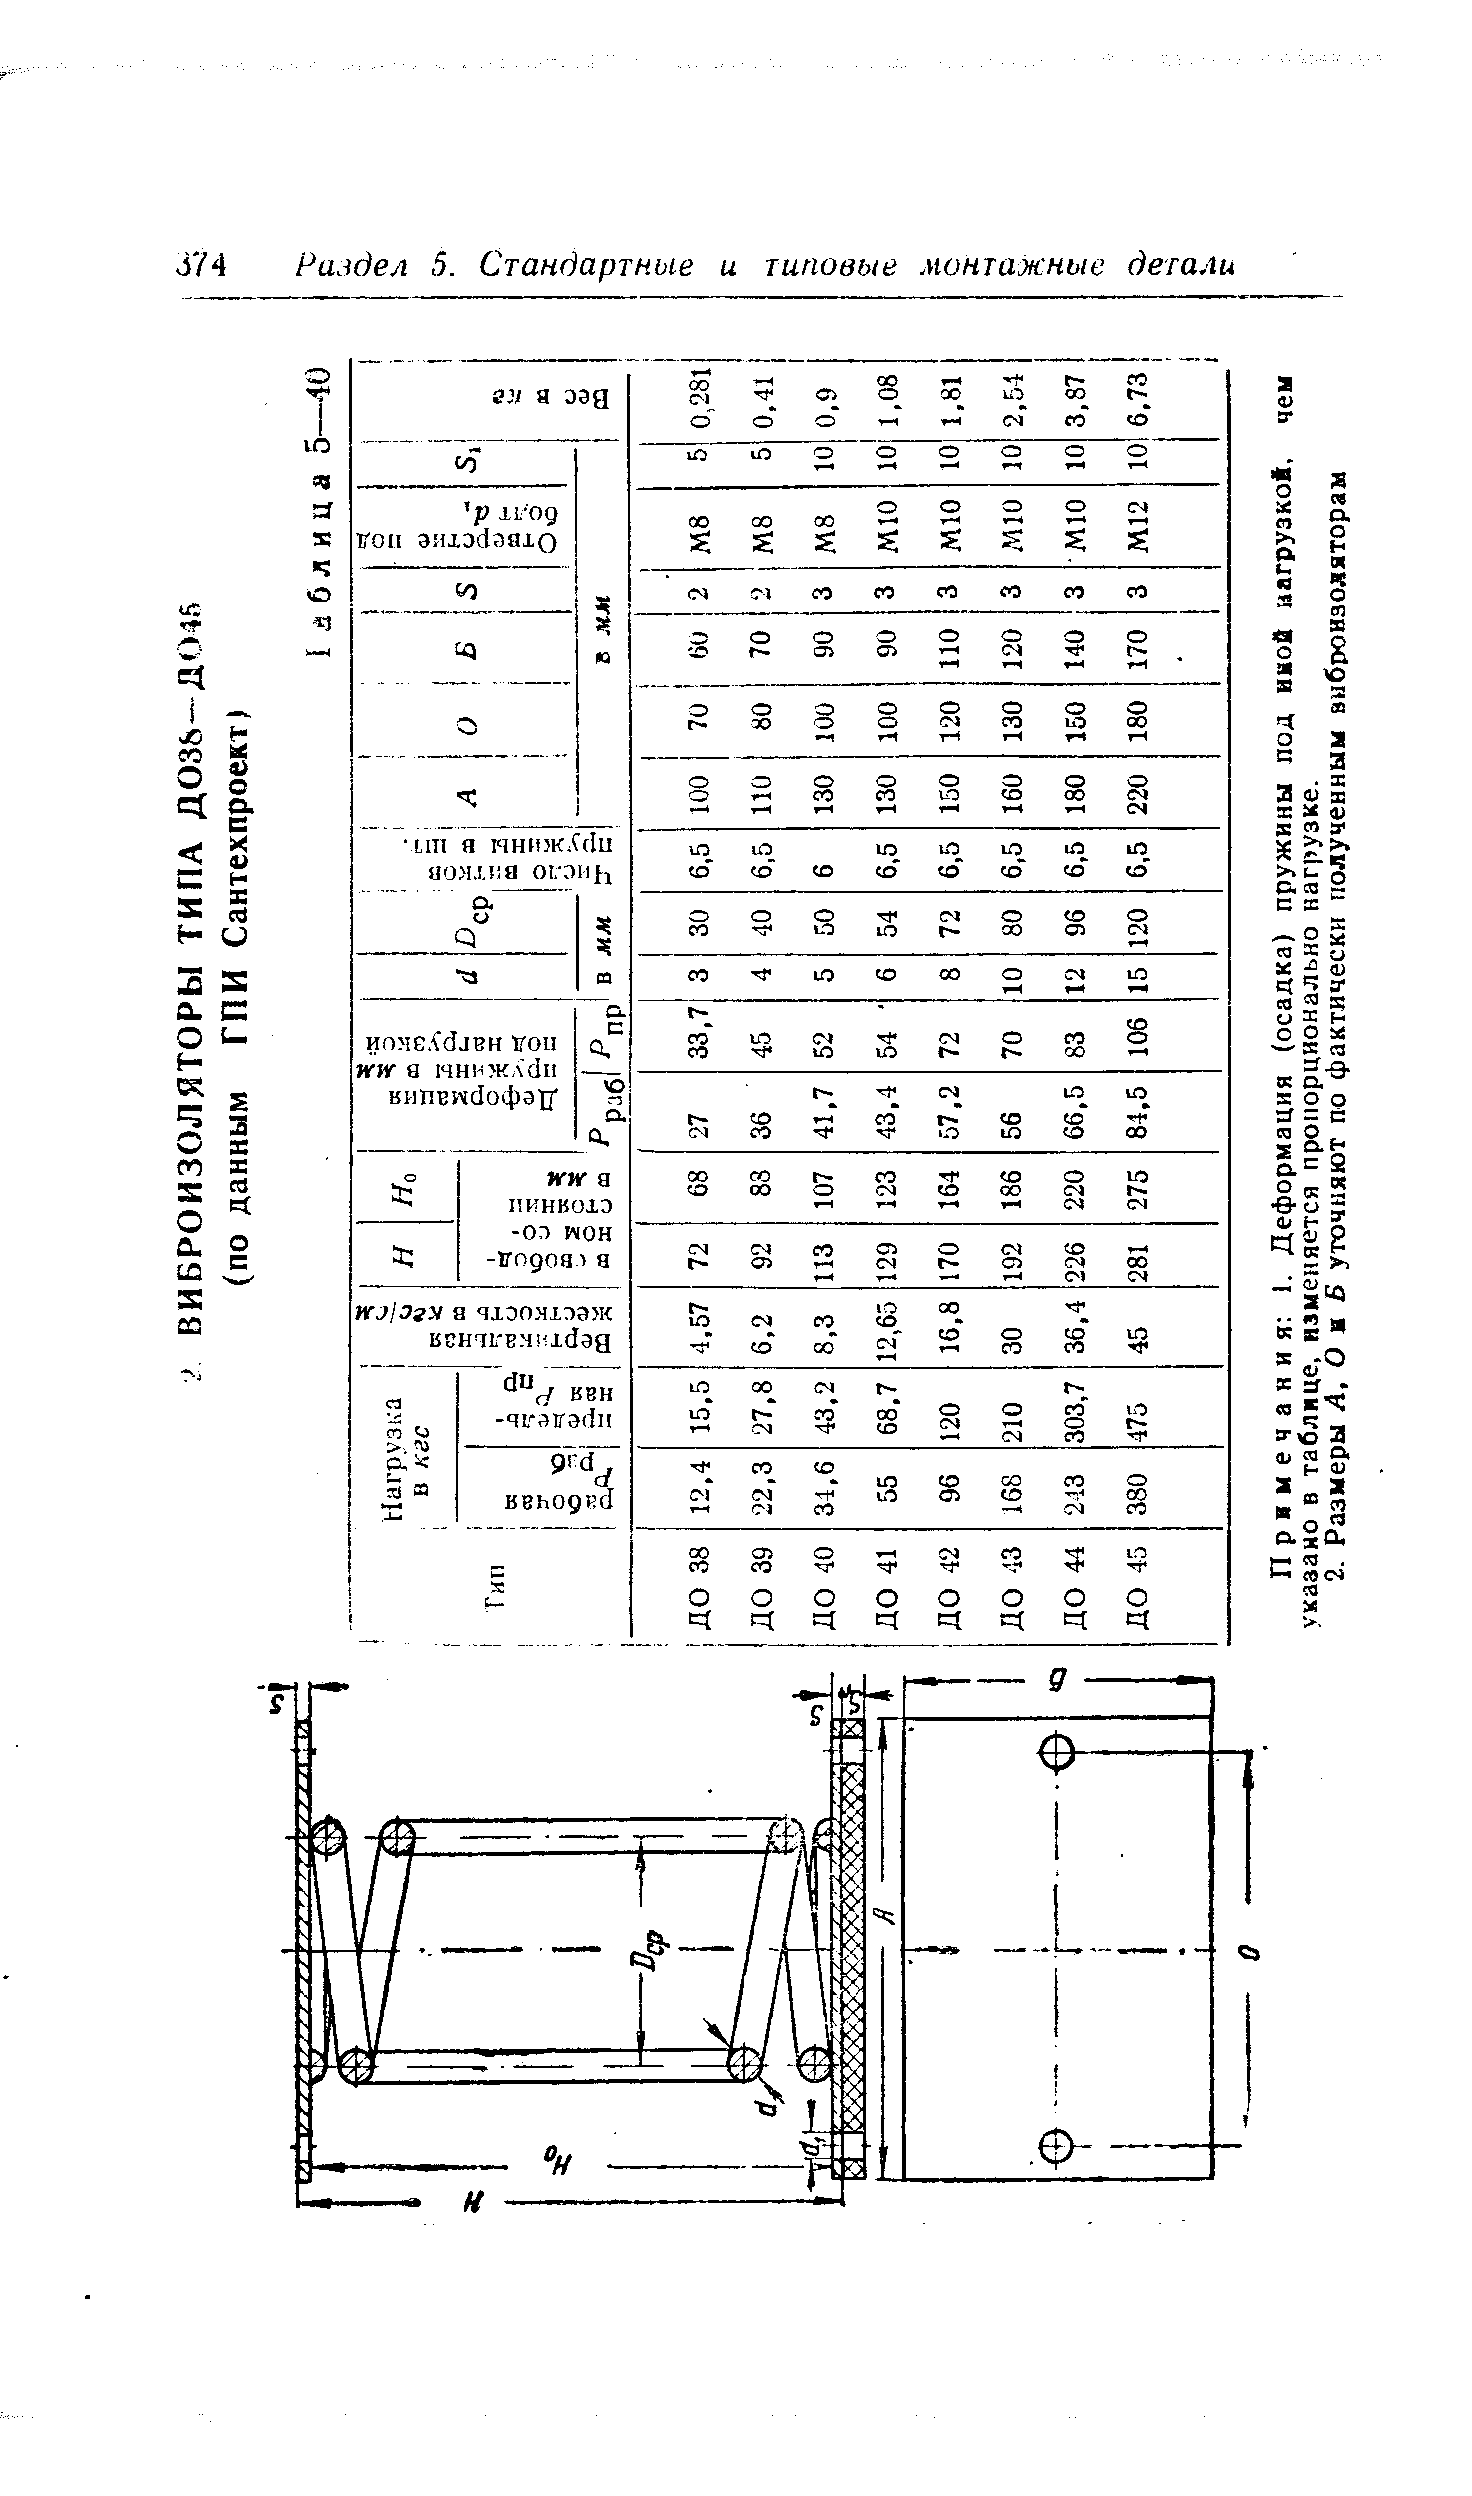 Примечания 1. Деформация (осадка) пружины под иной нагрузкой, указано в таблице, изменяется пропорционально нагрузке.